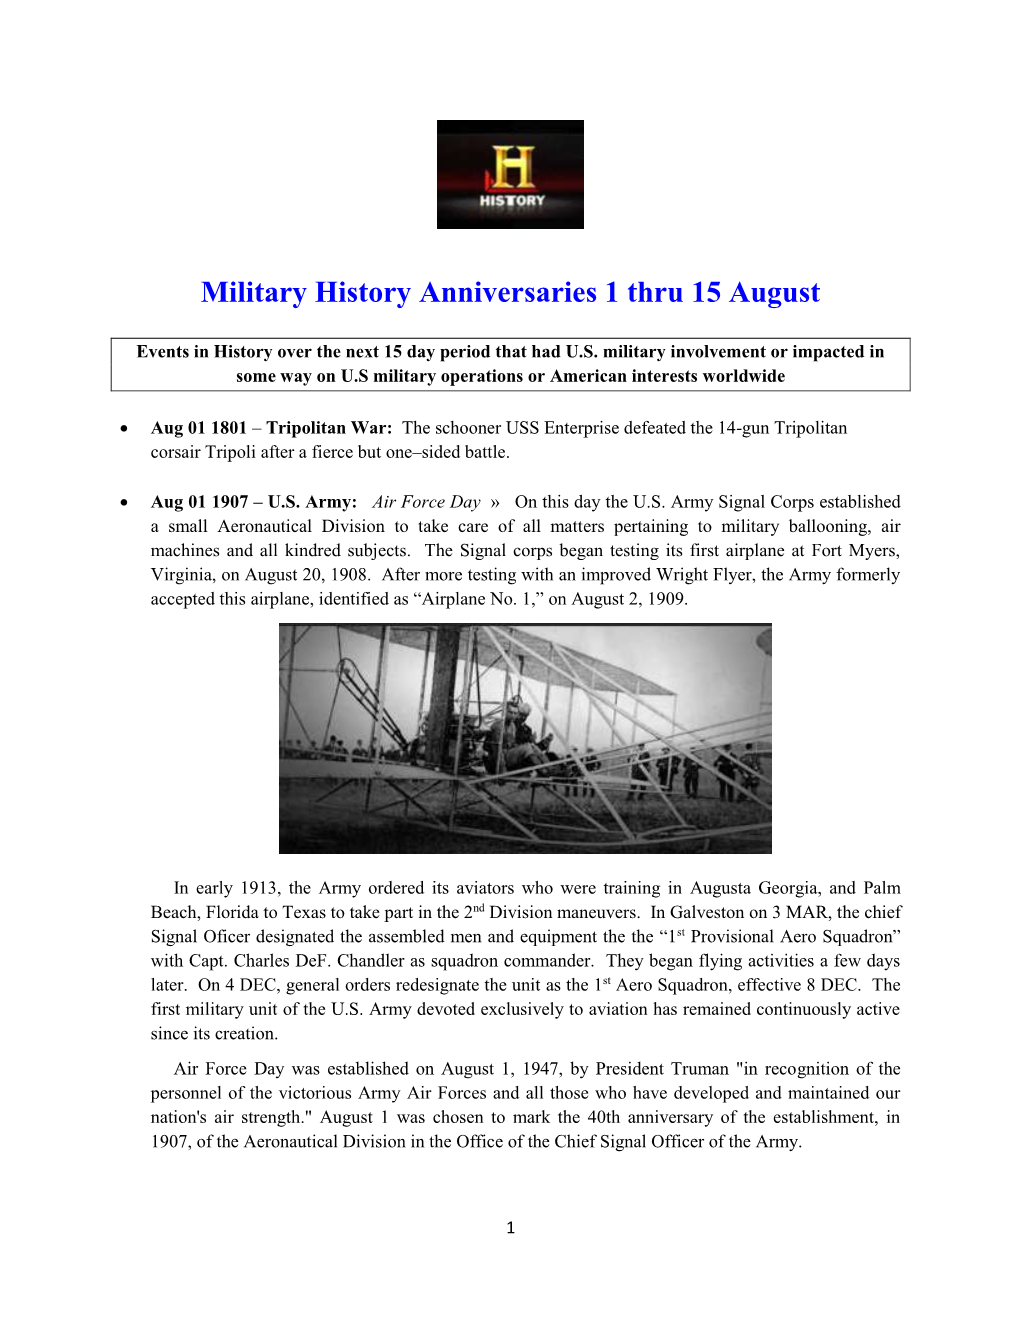 Military History Anniversaries 1 Thru 15 August